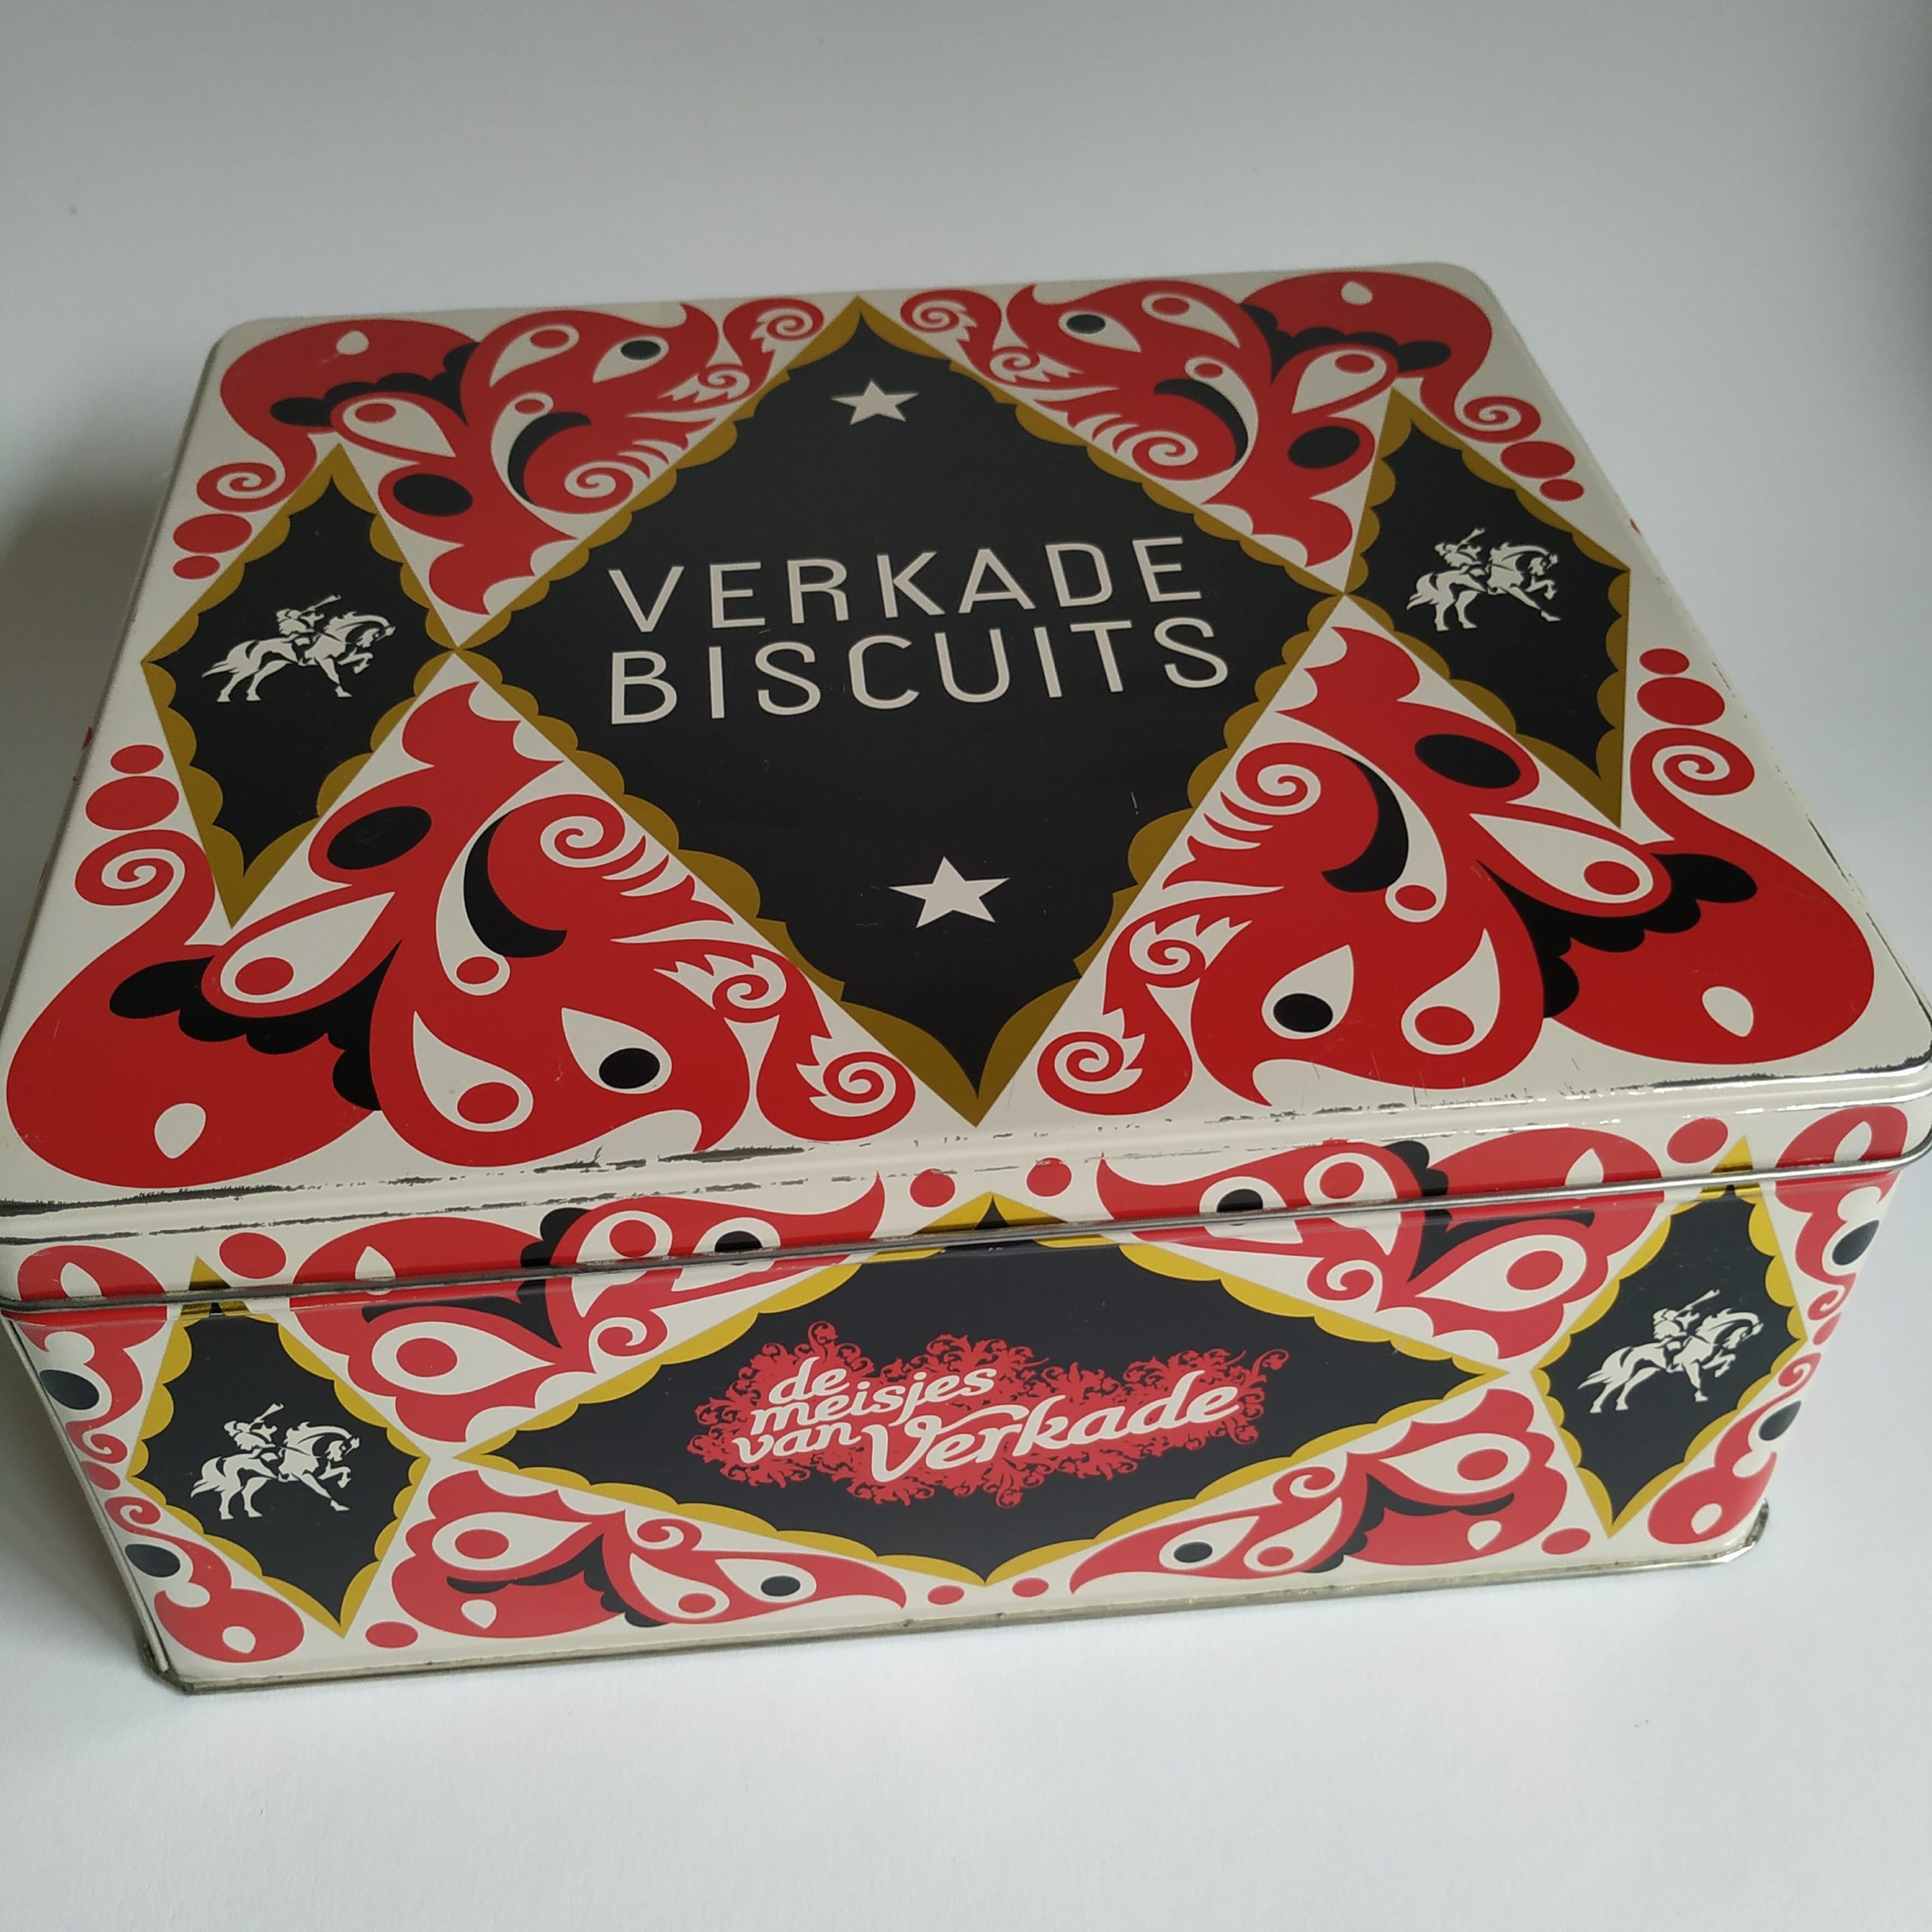 Vintage Blik / Koektrommel Verkade Biscuits Queens